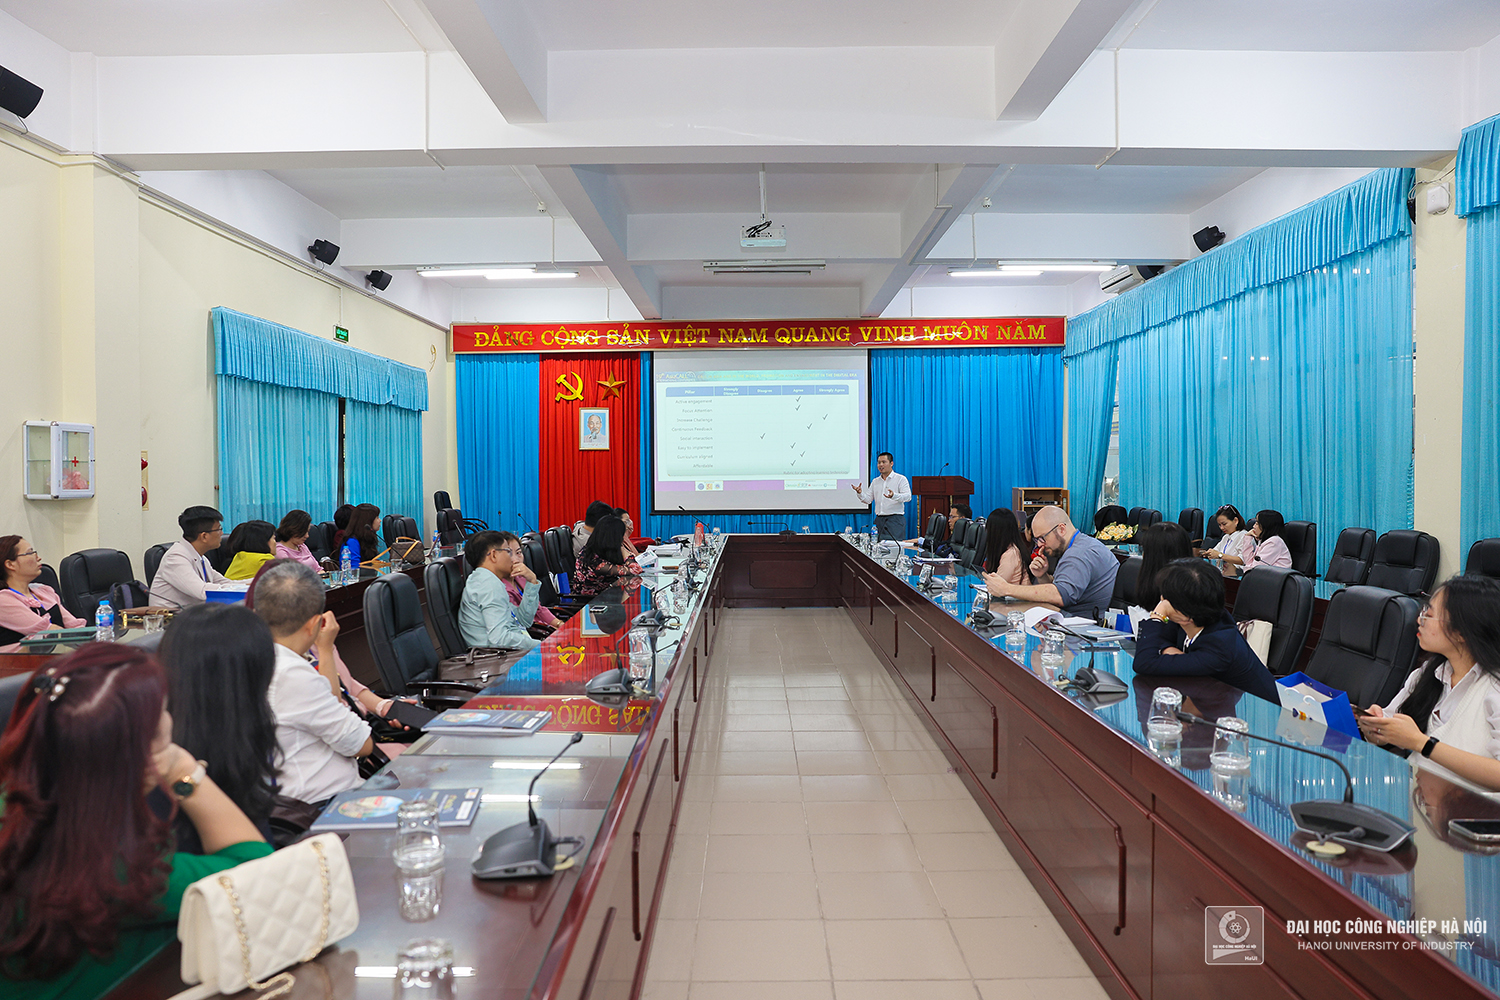 Hội thảo quốc tế AsiaCALL lần thứ 19 tại Trường Đại học Công nghiệp Hà Nội